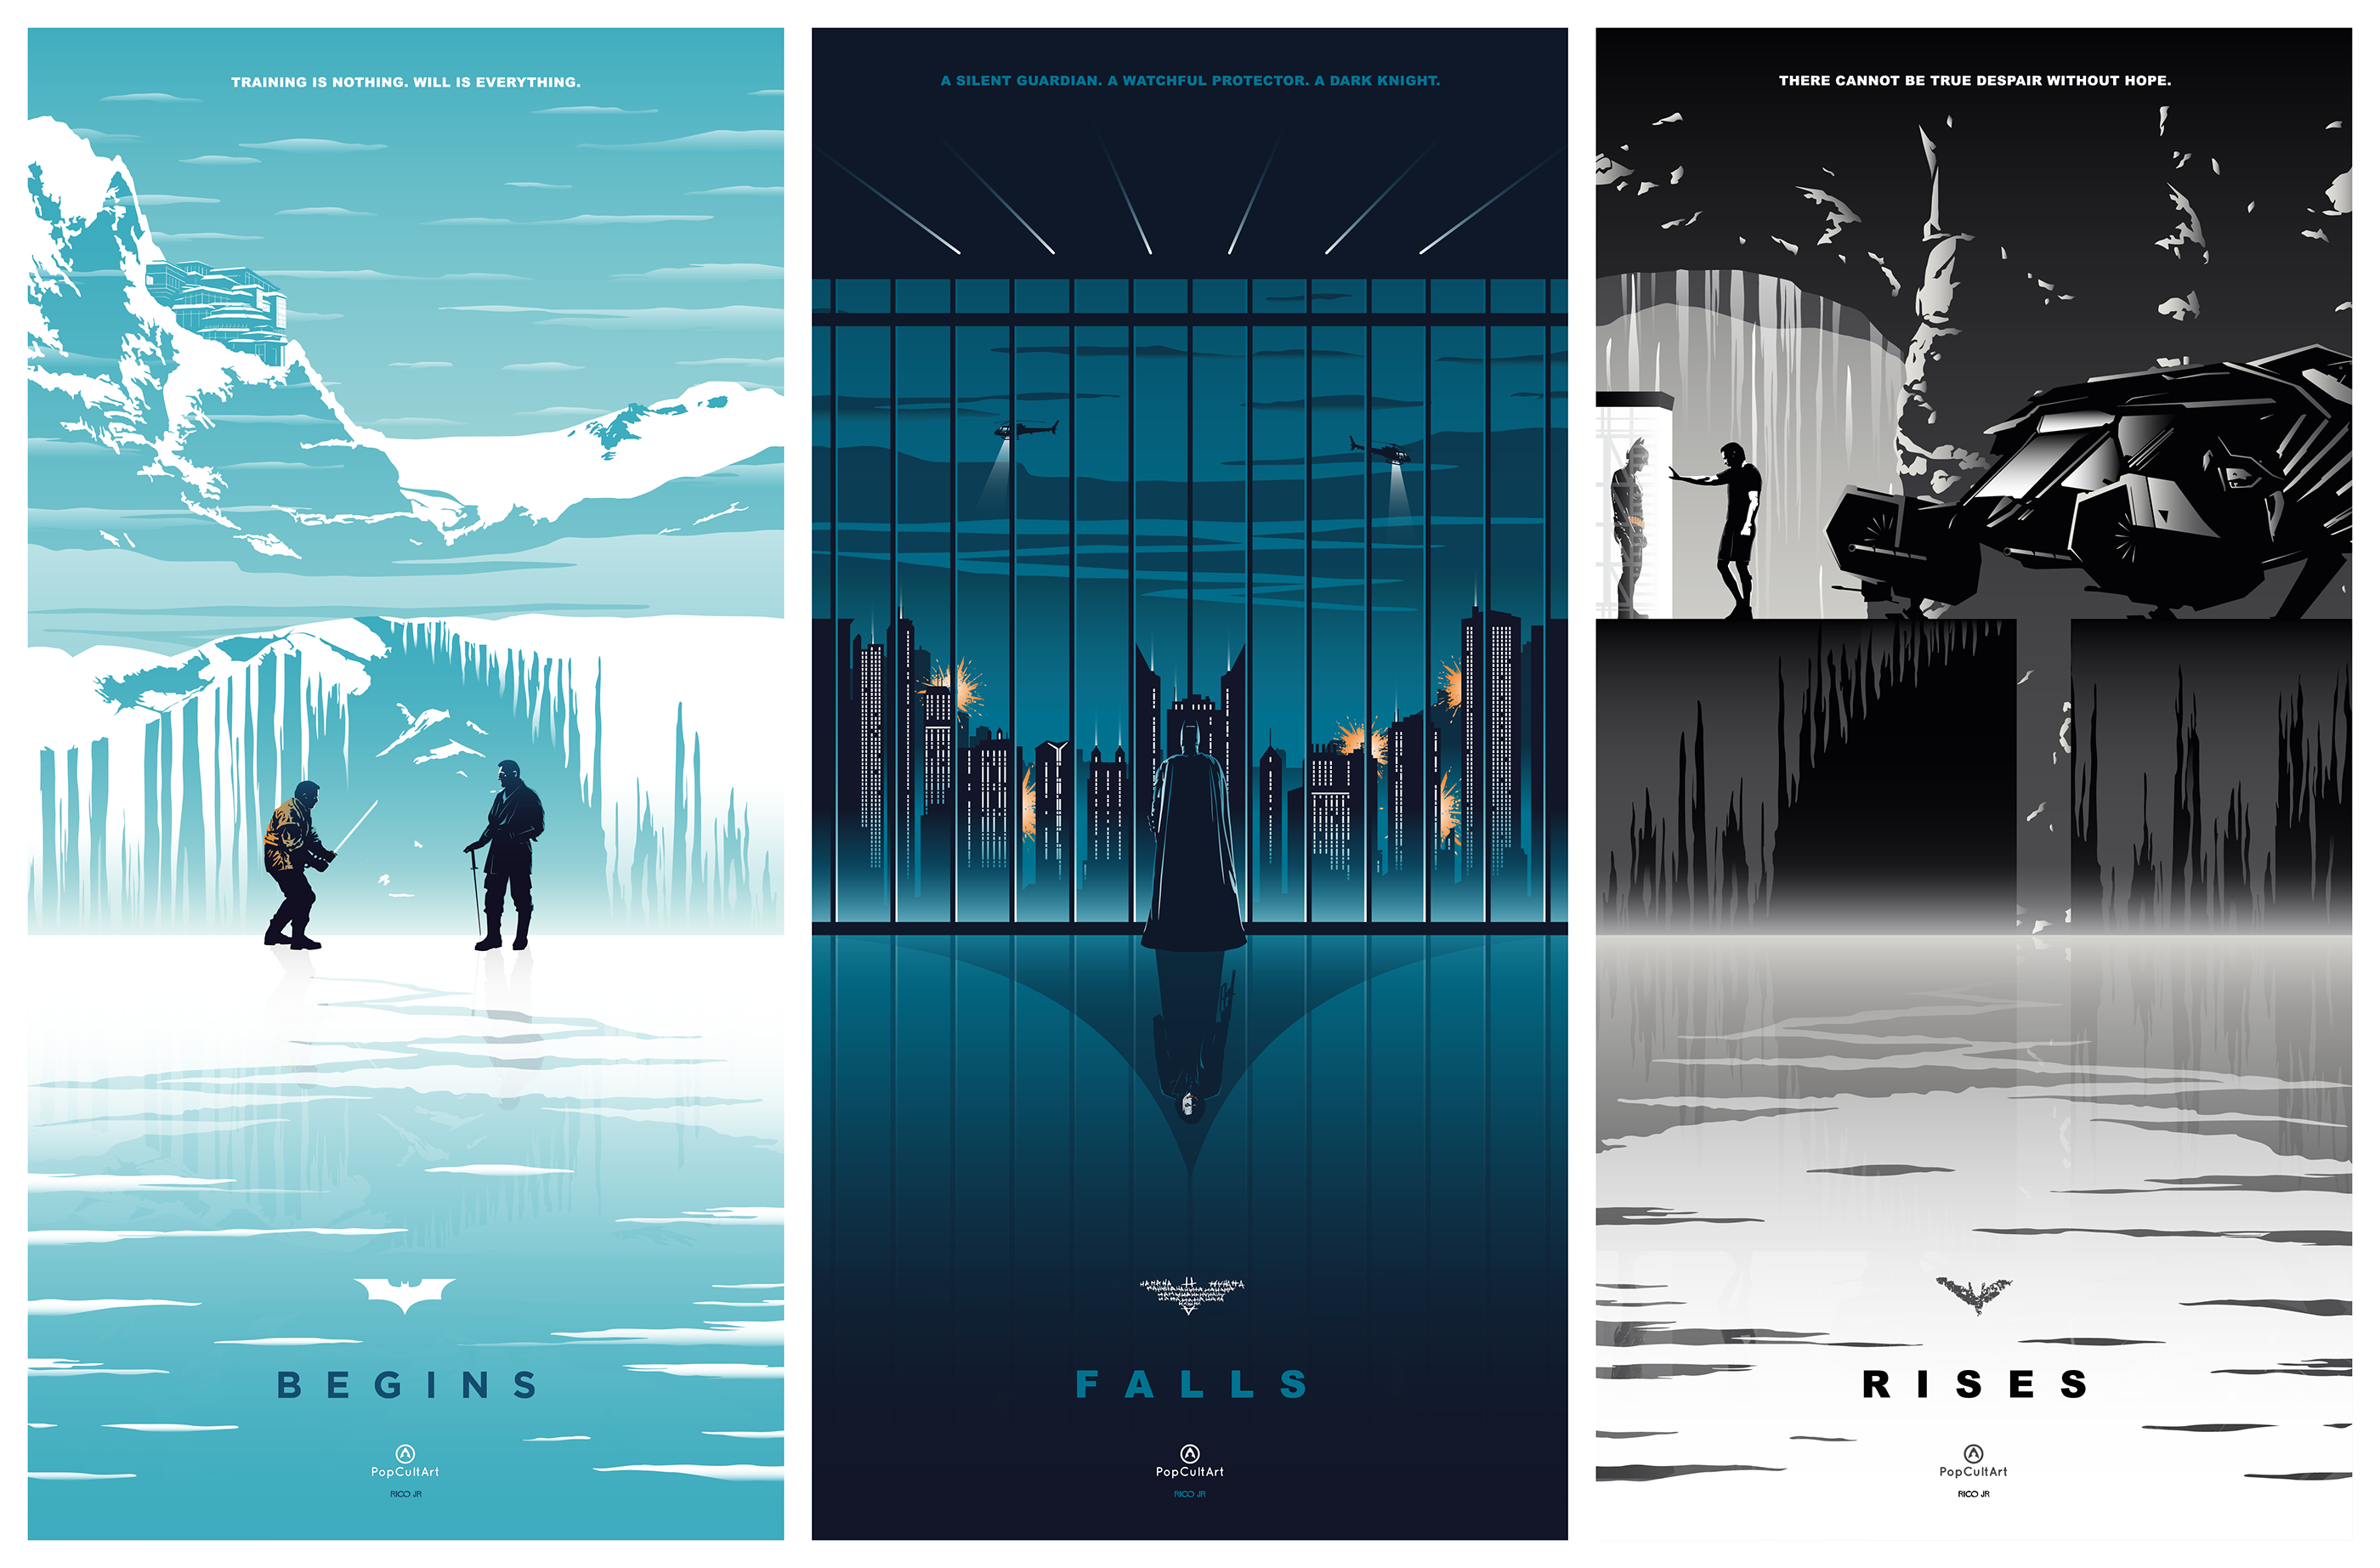 batman trilogy wallpapers